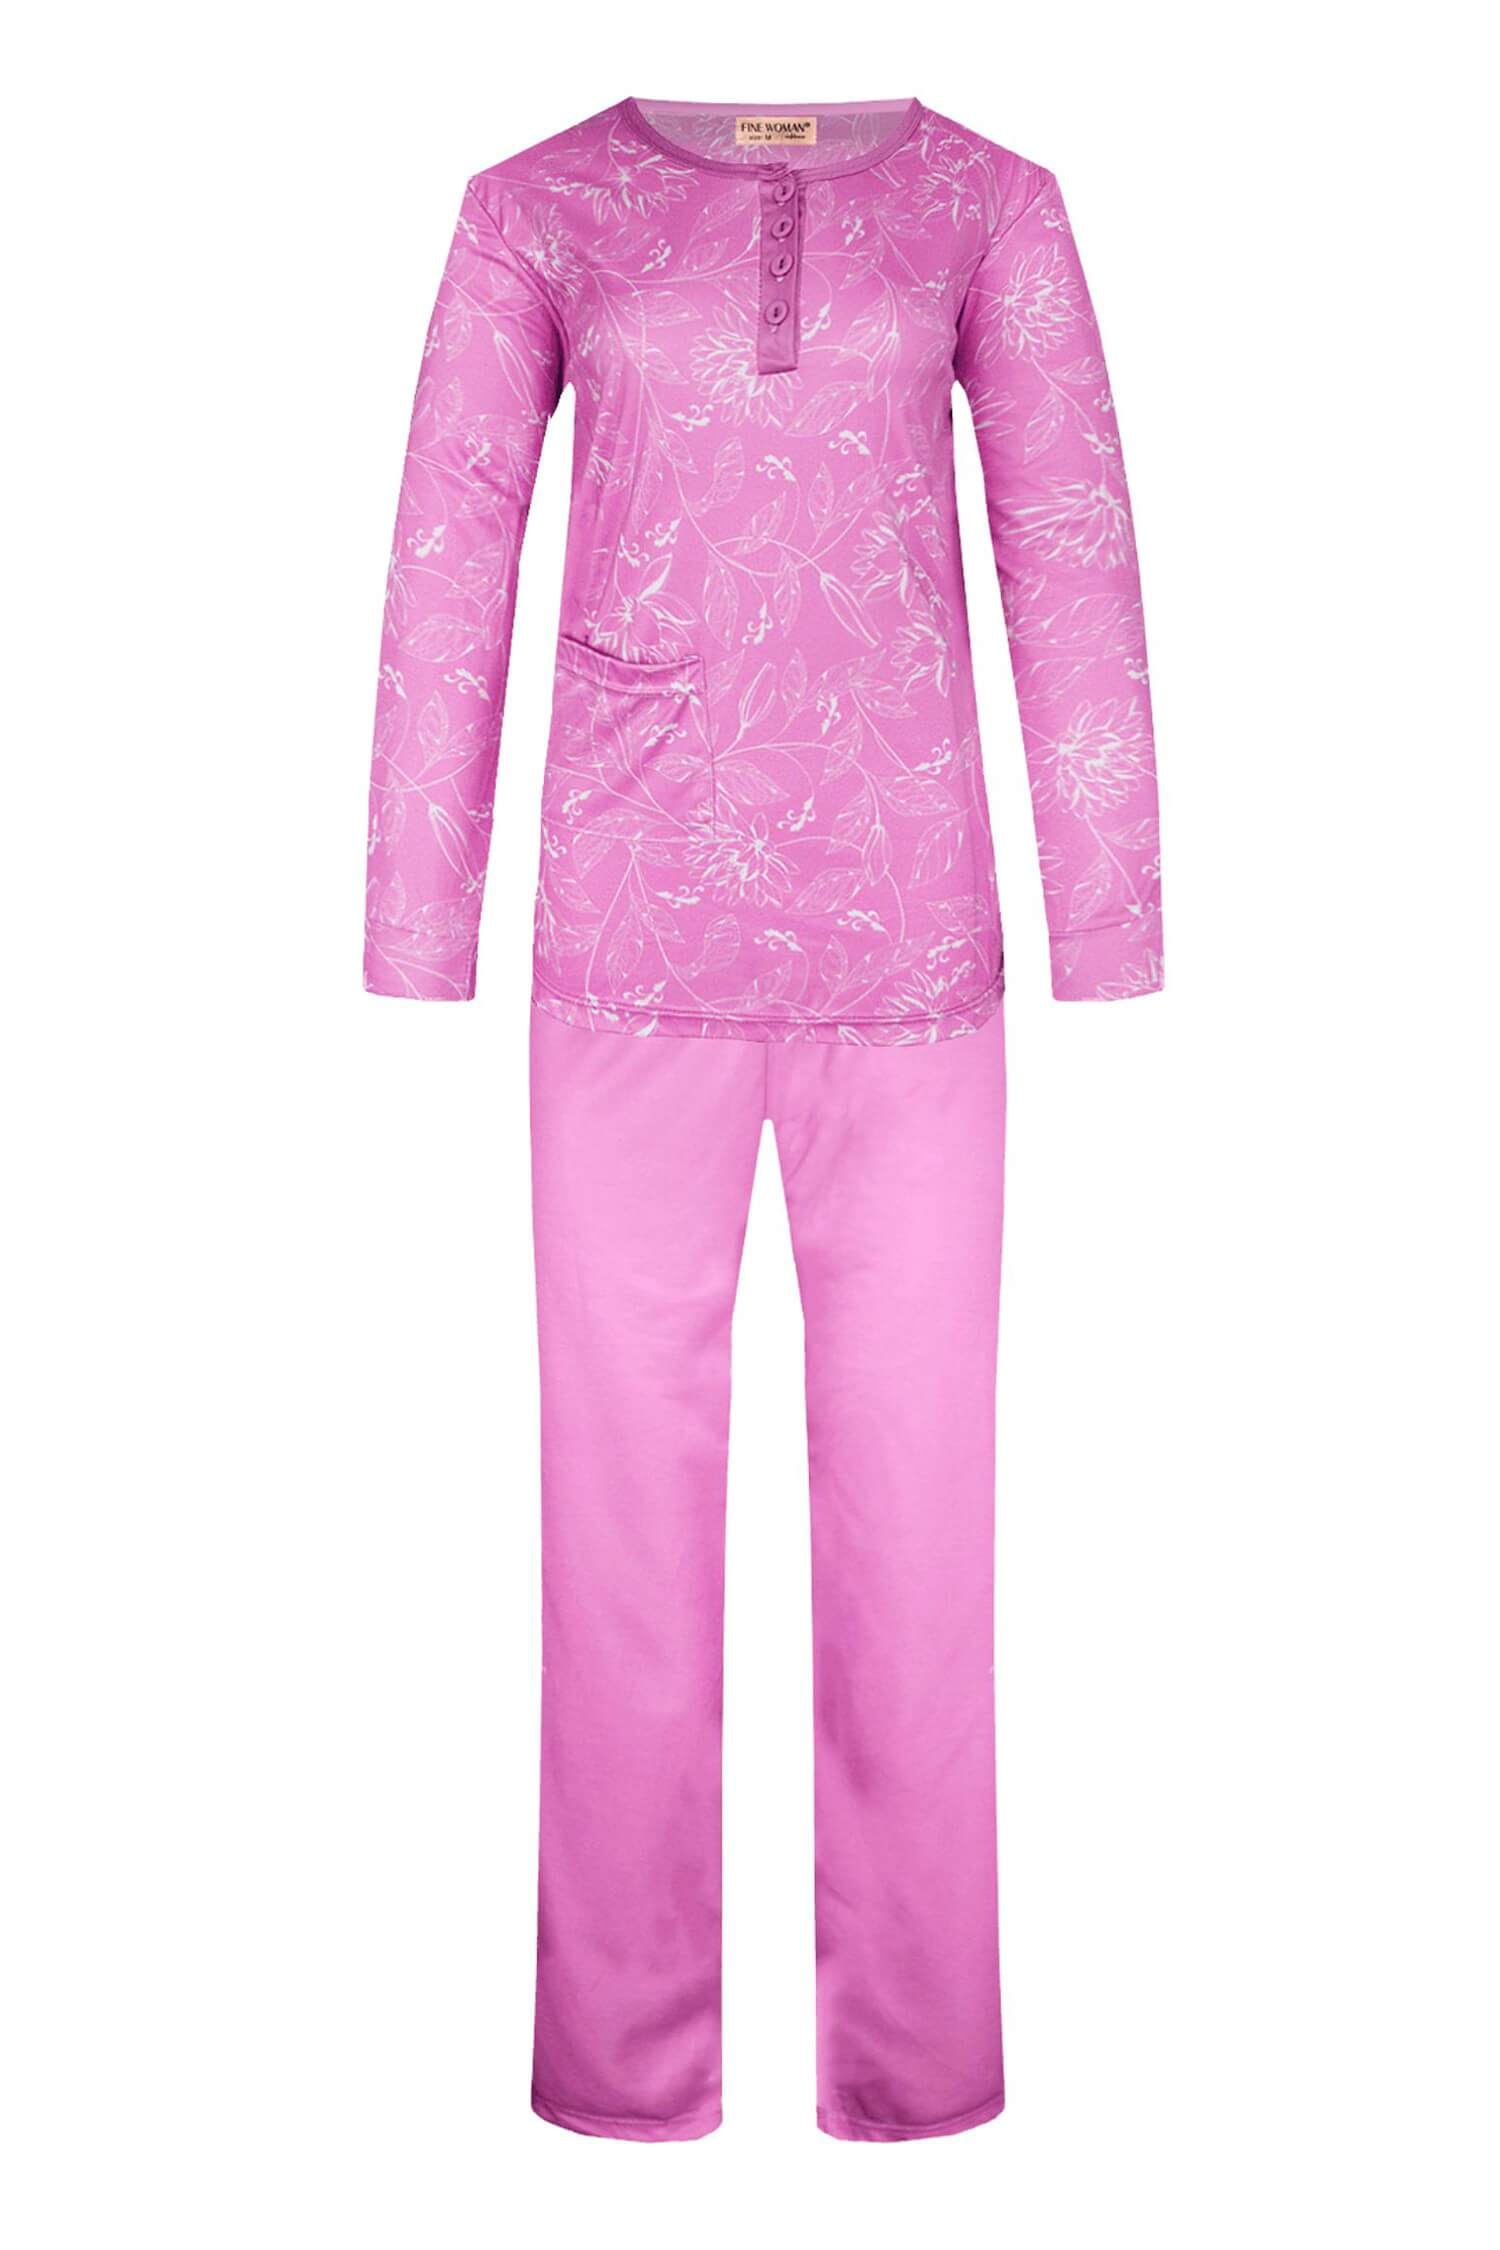 Sára dámské pyžamo dlouhý rukáv 2299 L růžová